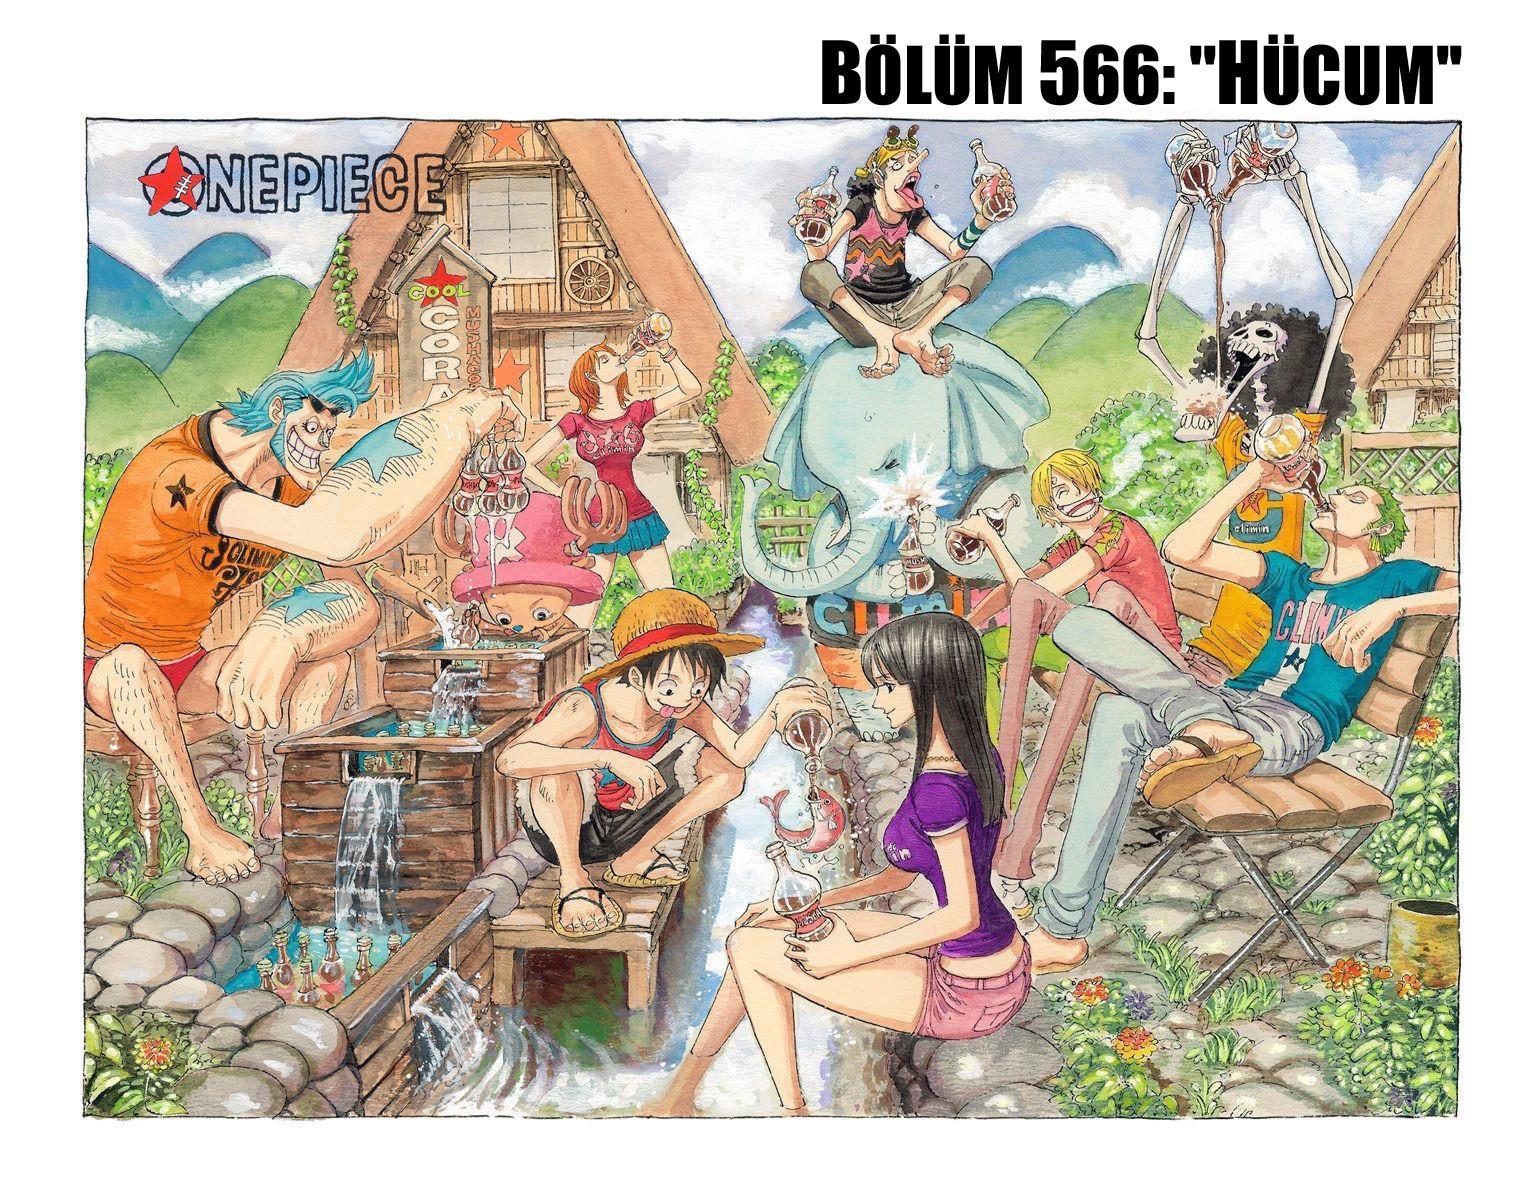 One Piece [Renkli] mangasının 0566 bölümünün 2. sayfasını okuyorsunuz.